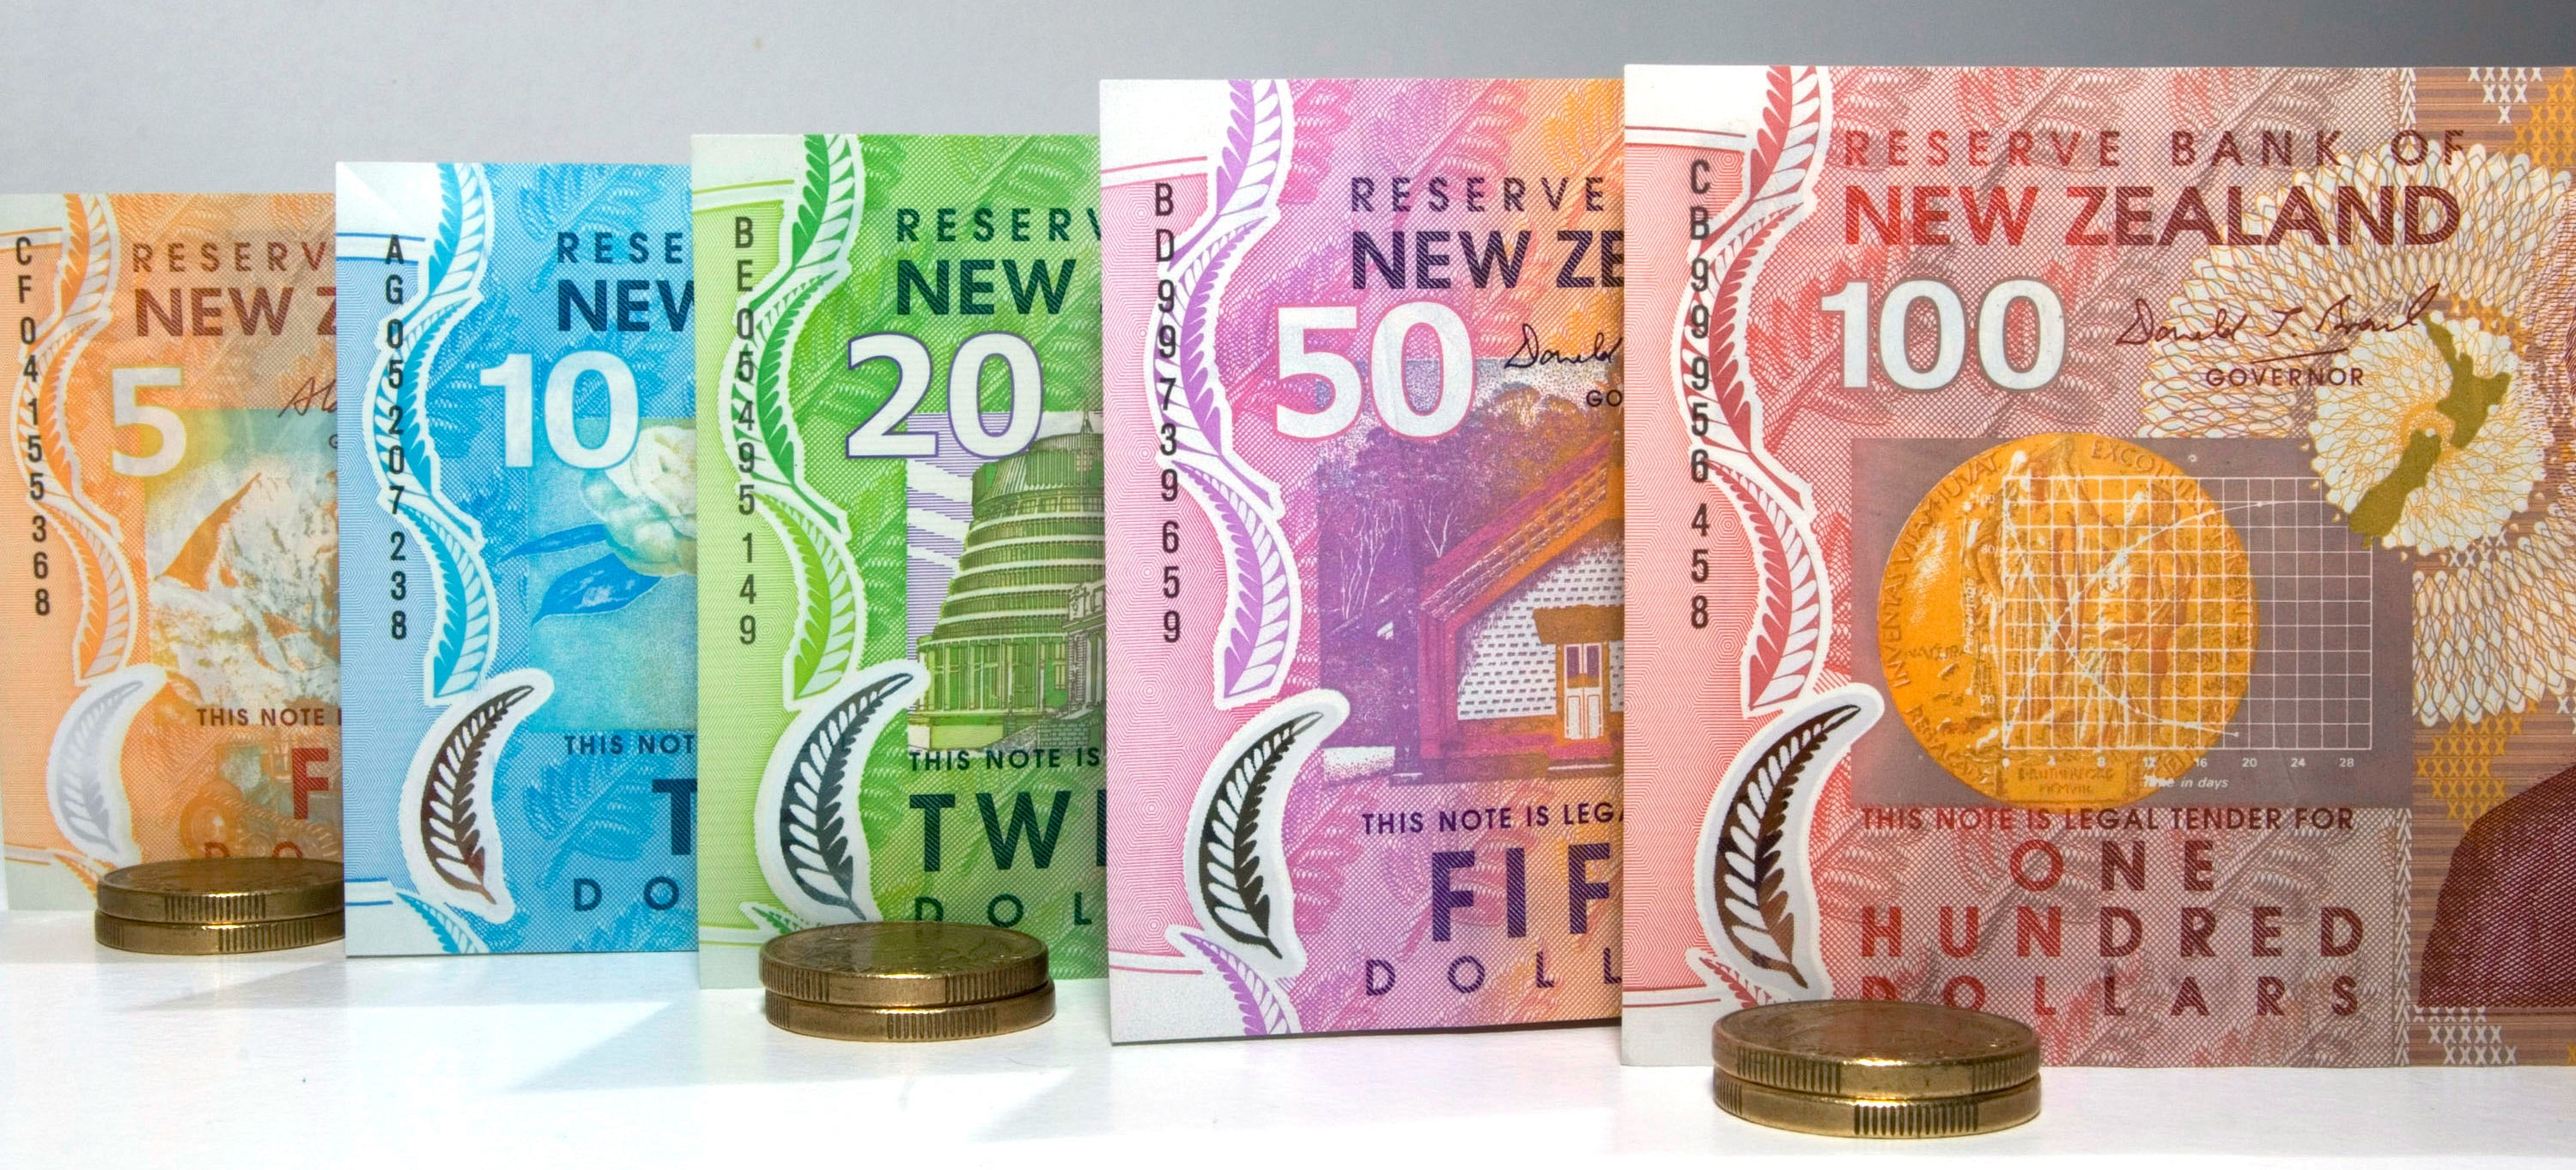  الدولار النيوزيلندي يرتفع بعد تعهد الصين بمواصلة التحفيز النقدي وتخفيف النزاع التجاري